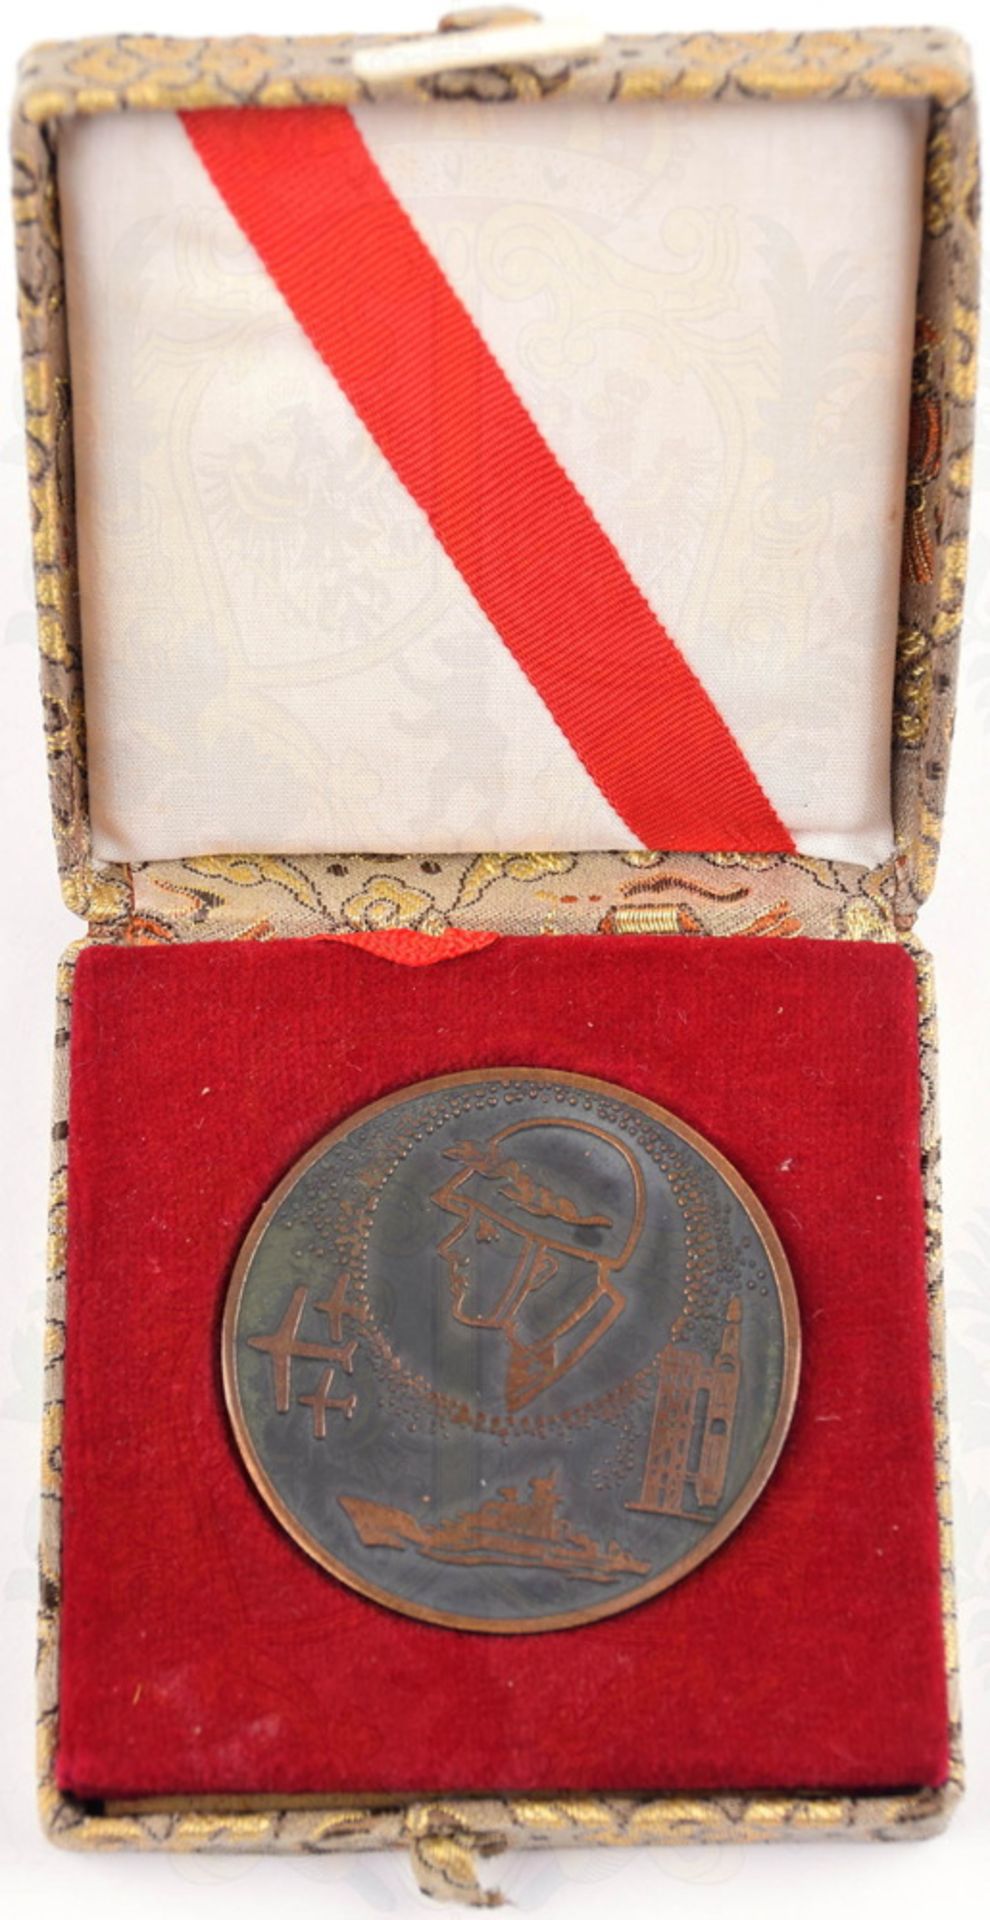 Medaille 60 Jahre Volksbefreiungsarmee China, 1927-1960, Bronze, nicht tragbar, Ø 50mm, im orig.